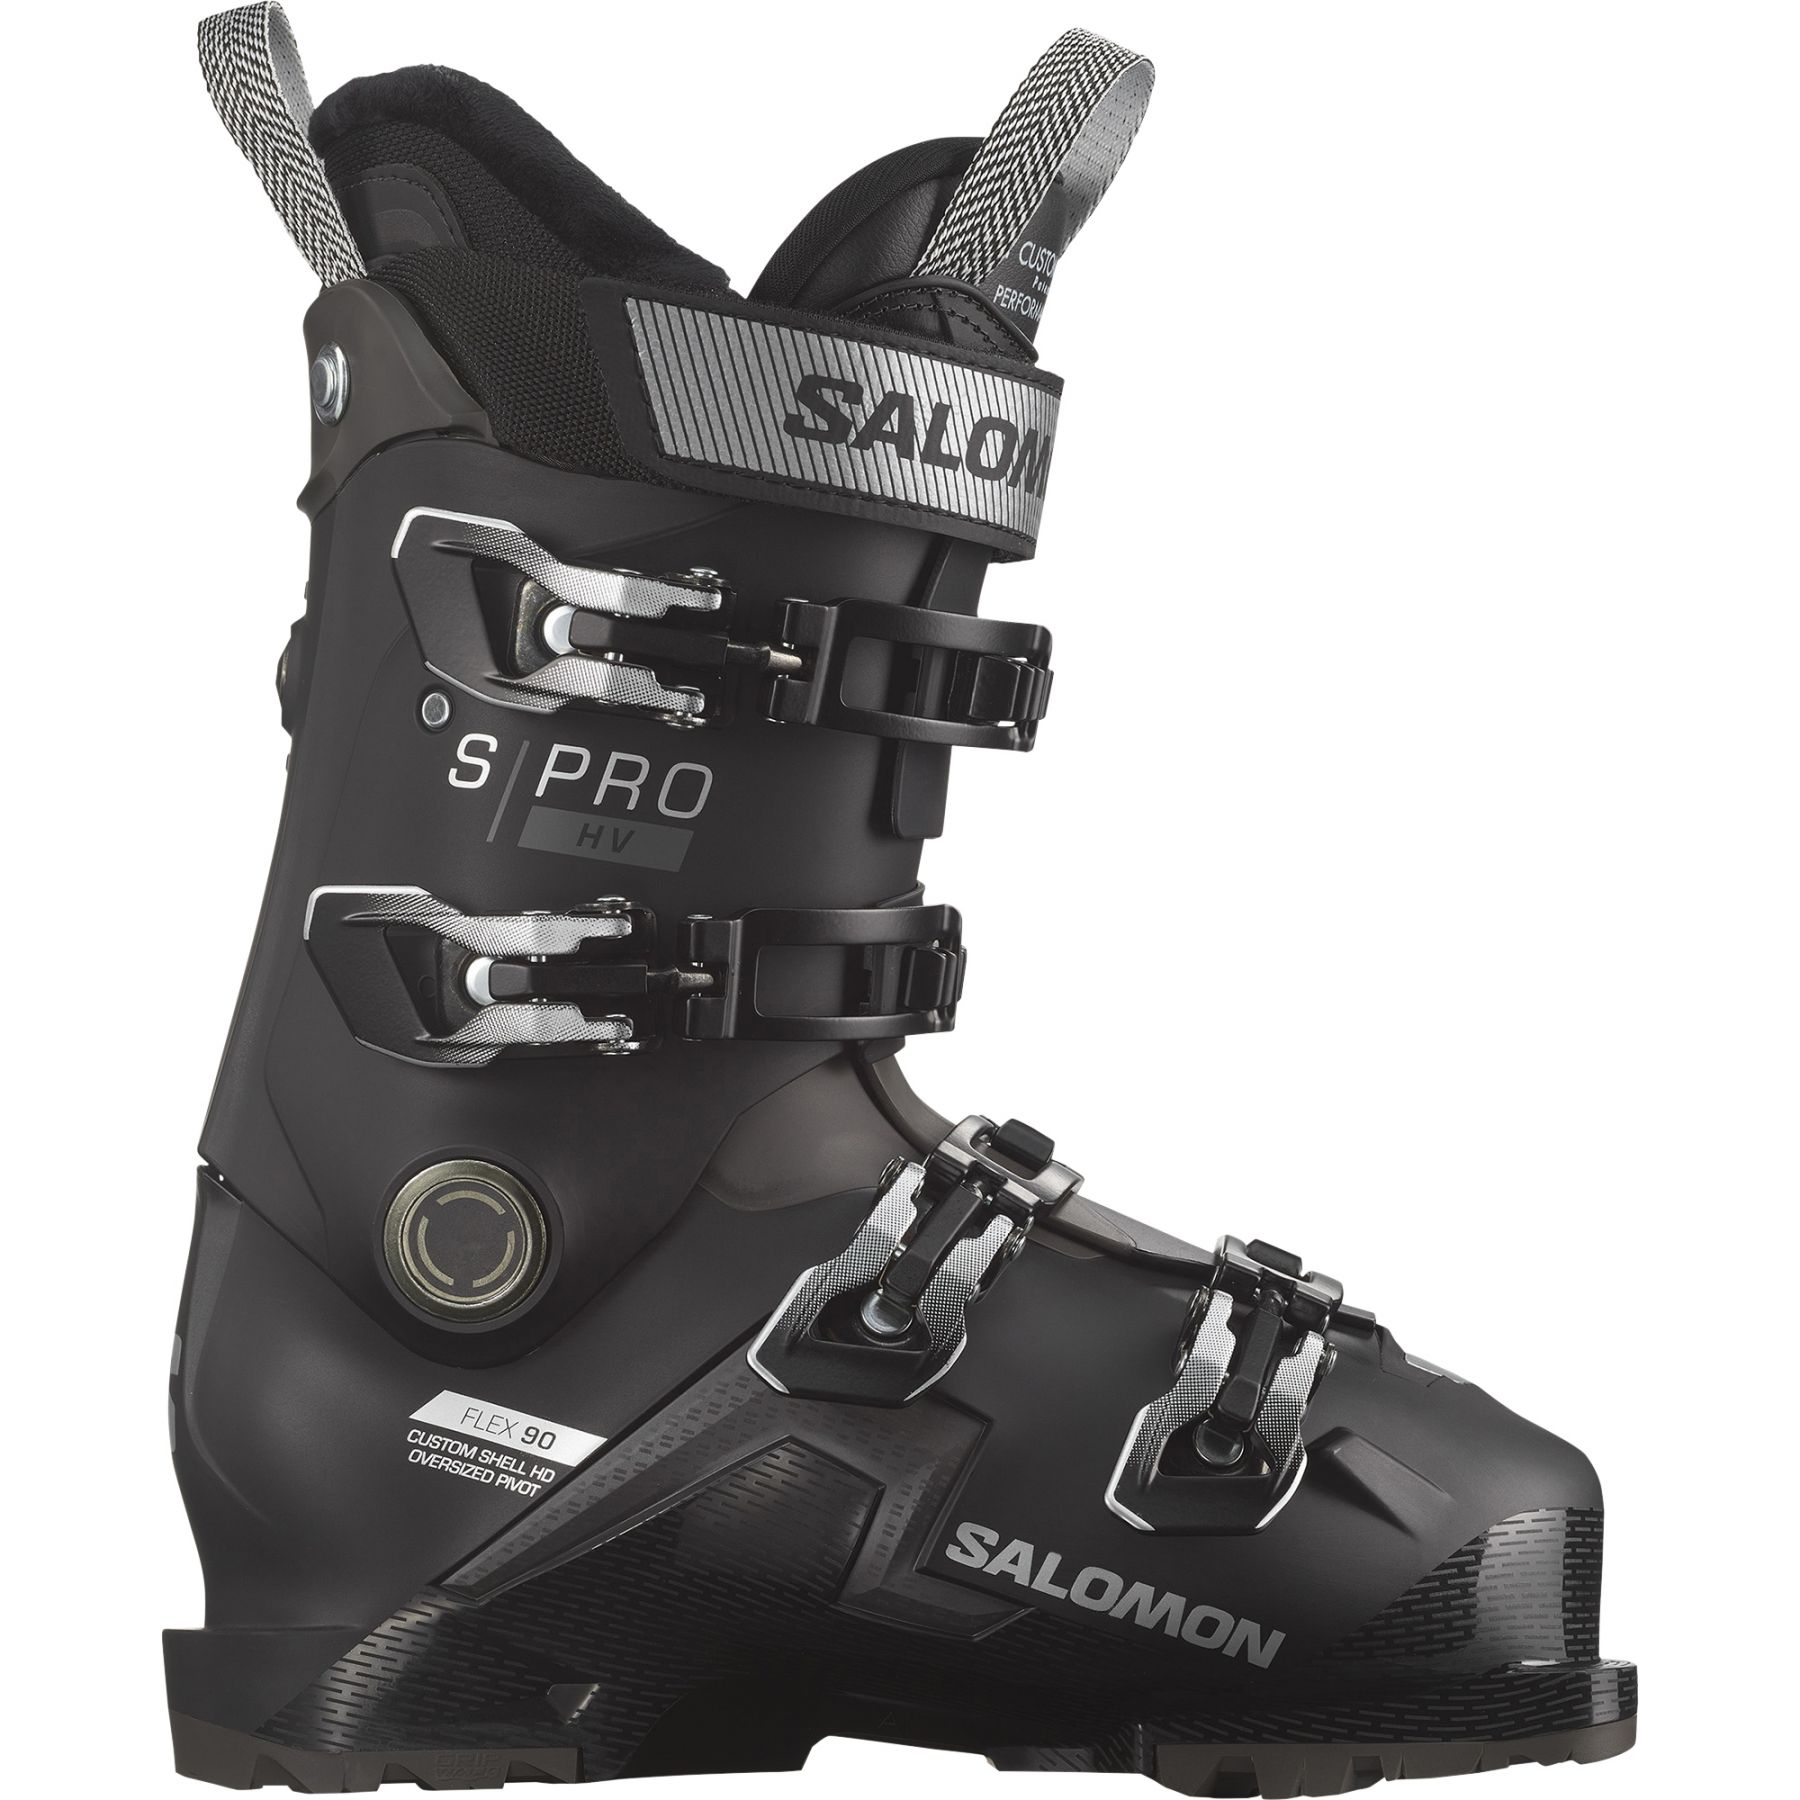 Se Salomon S/PRO HV 90 GW, skistøvler, dame, sort/sølv hos Skisport.dk